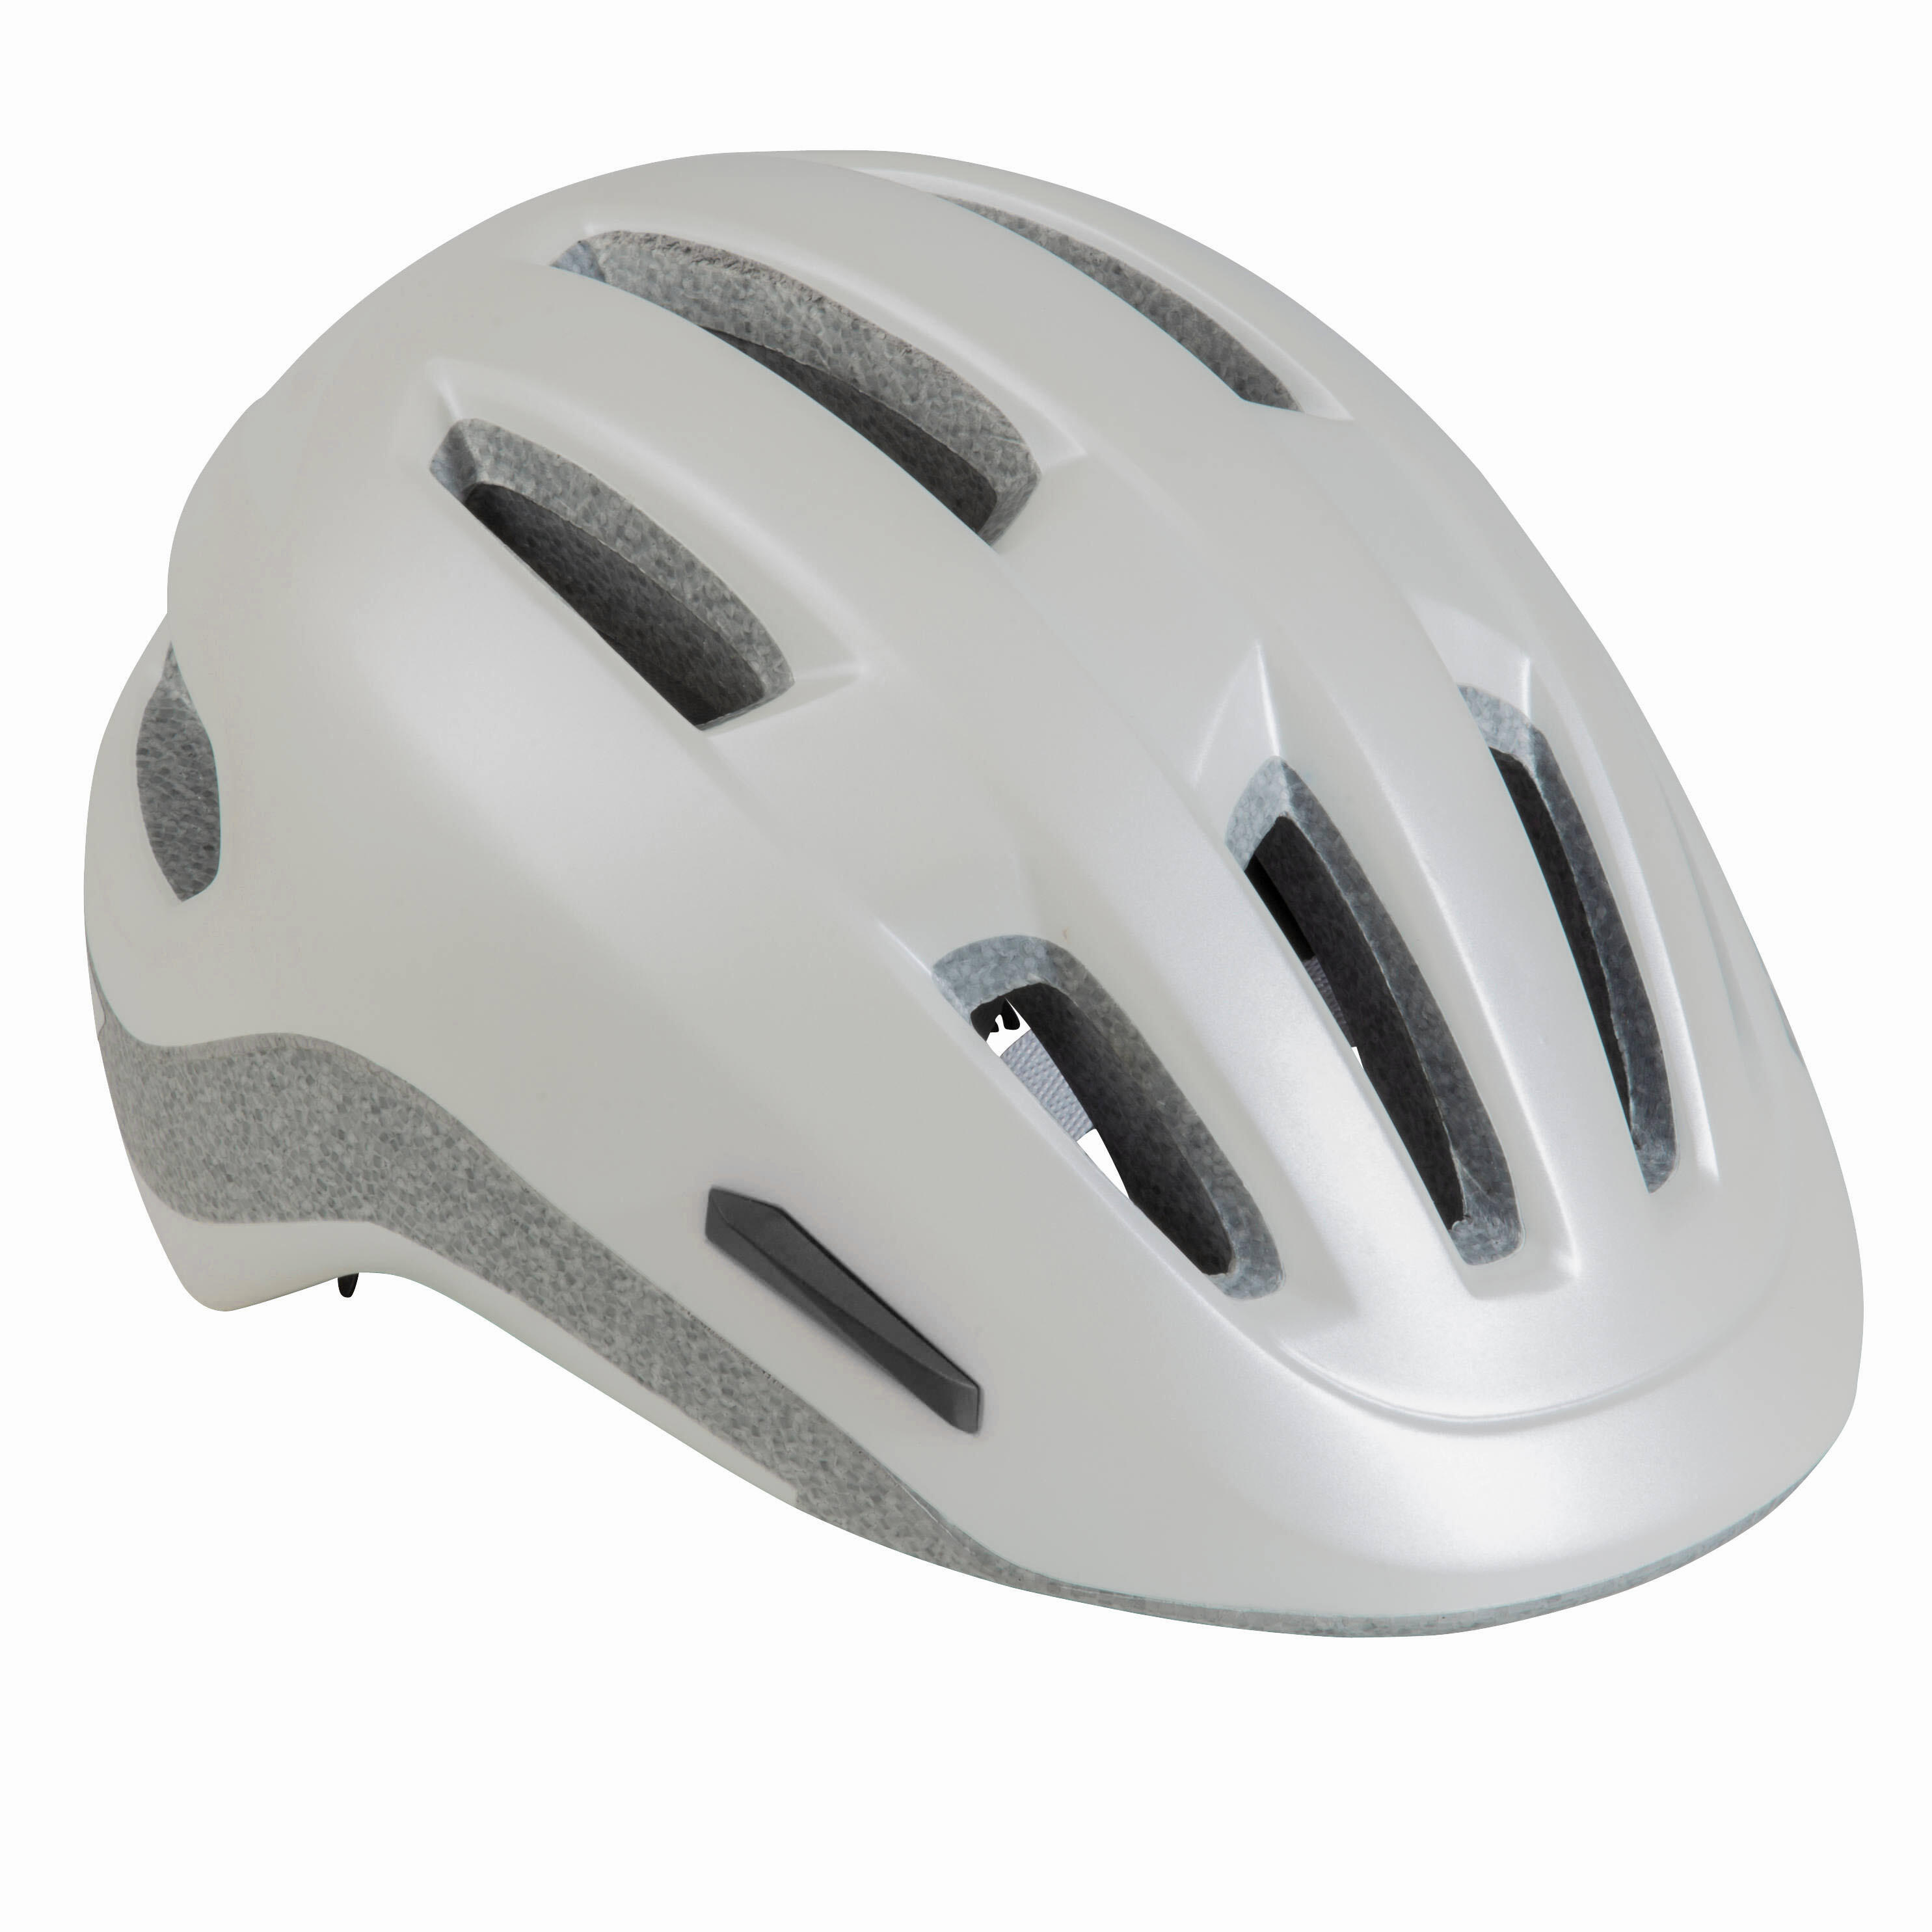 btwin 500 road helmet